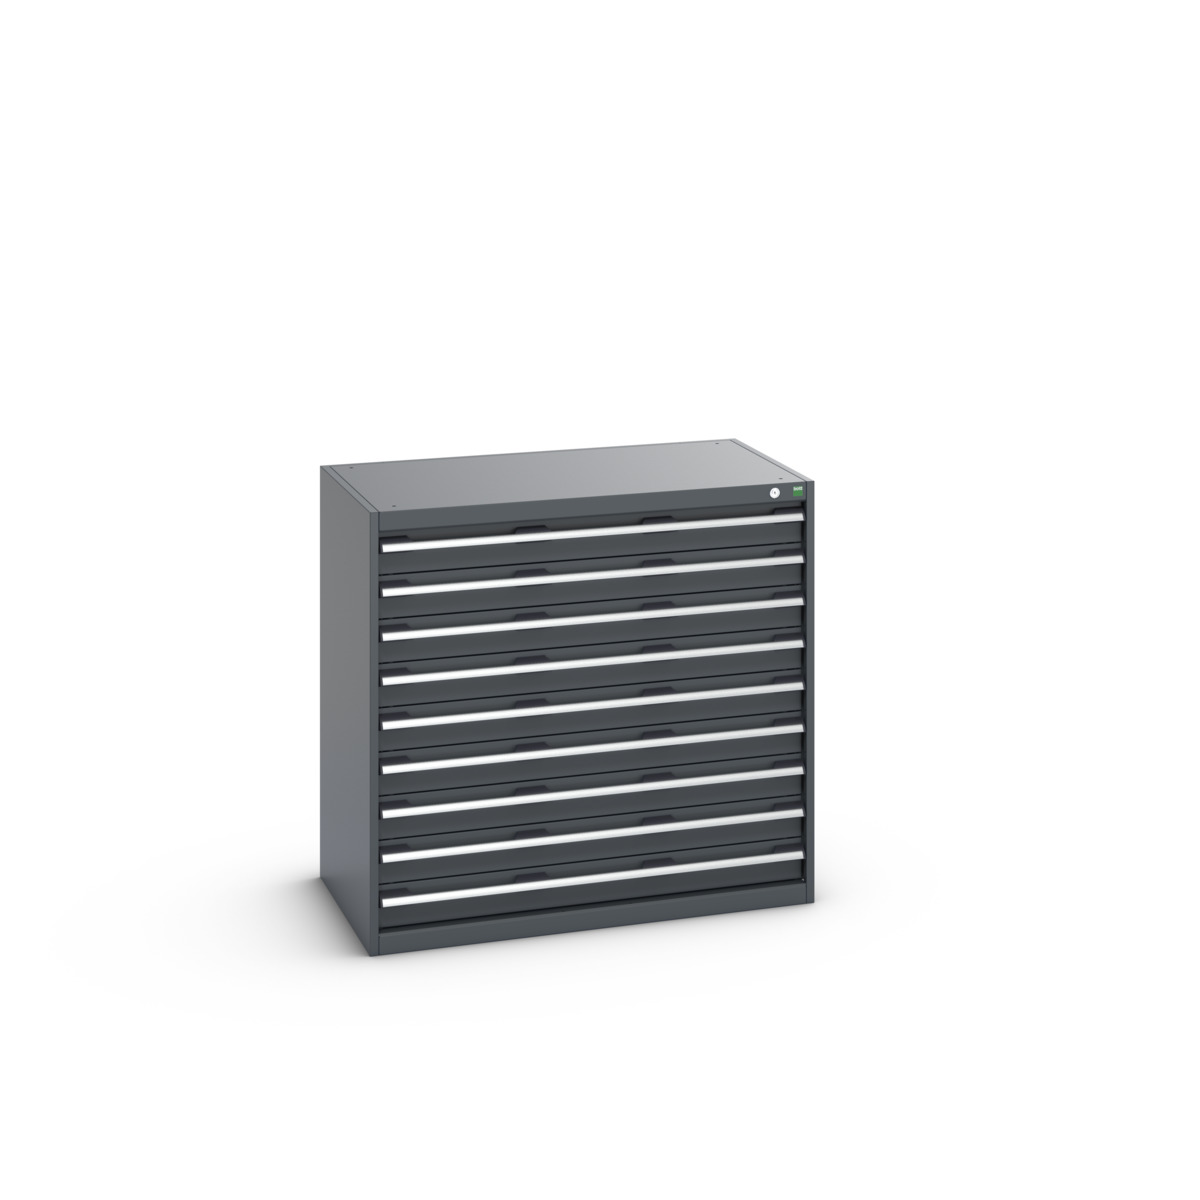 40021036.77V - cubio drawer cabinet